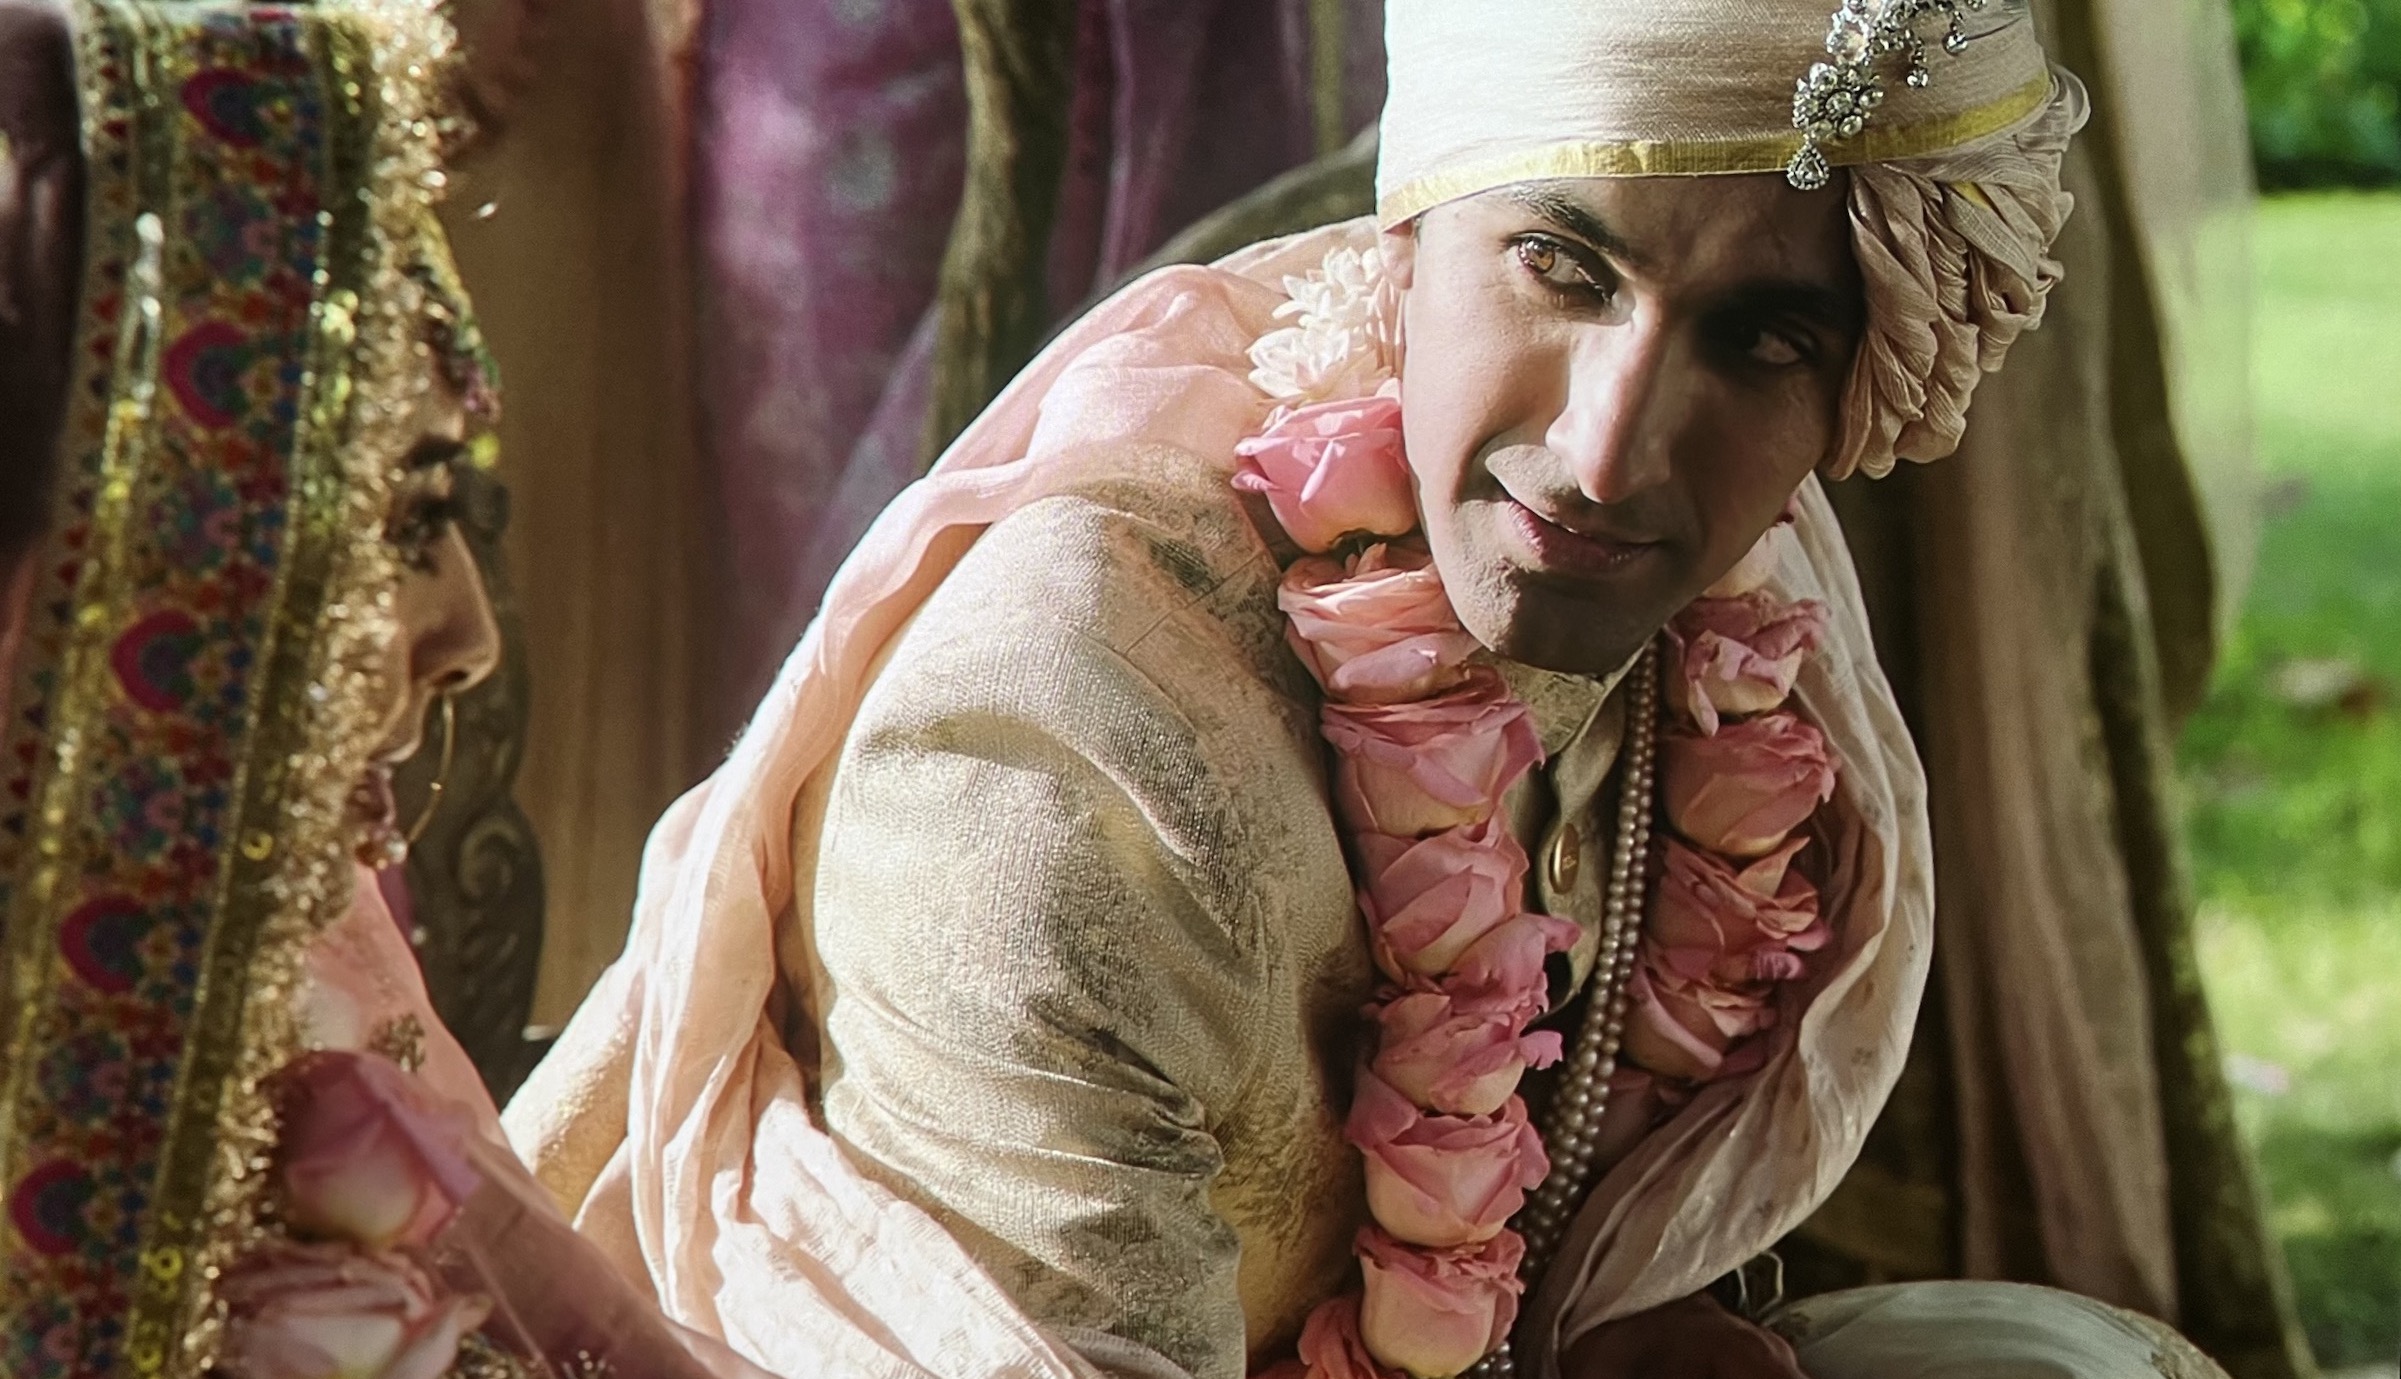 Rohan Gurbaxani as "Aman Batra" in Amazon Prime's Made in Heaven